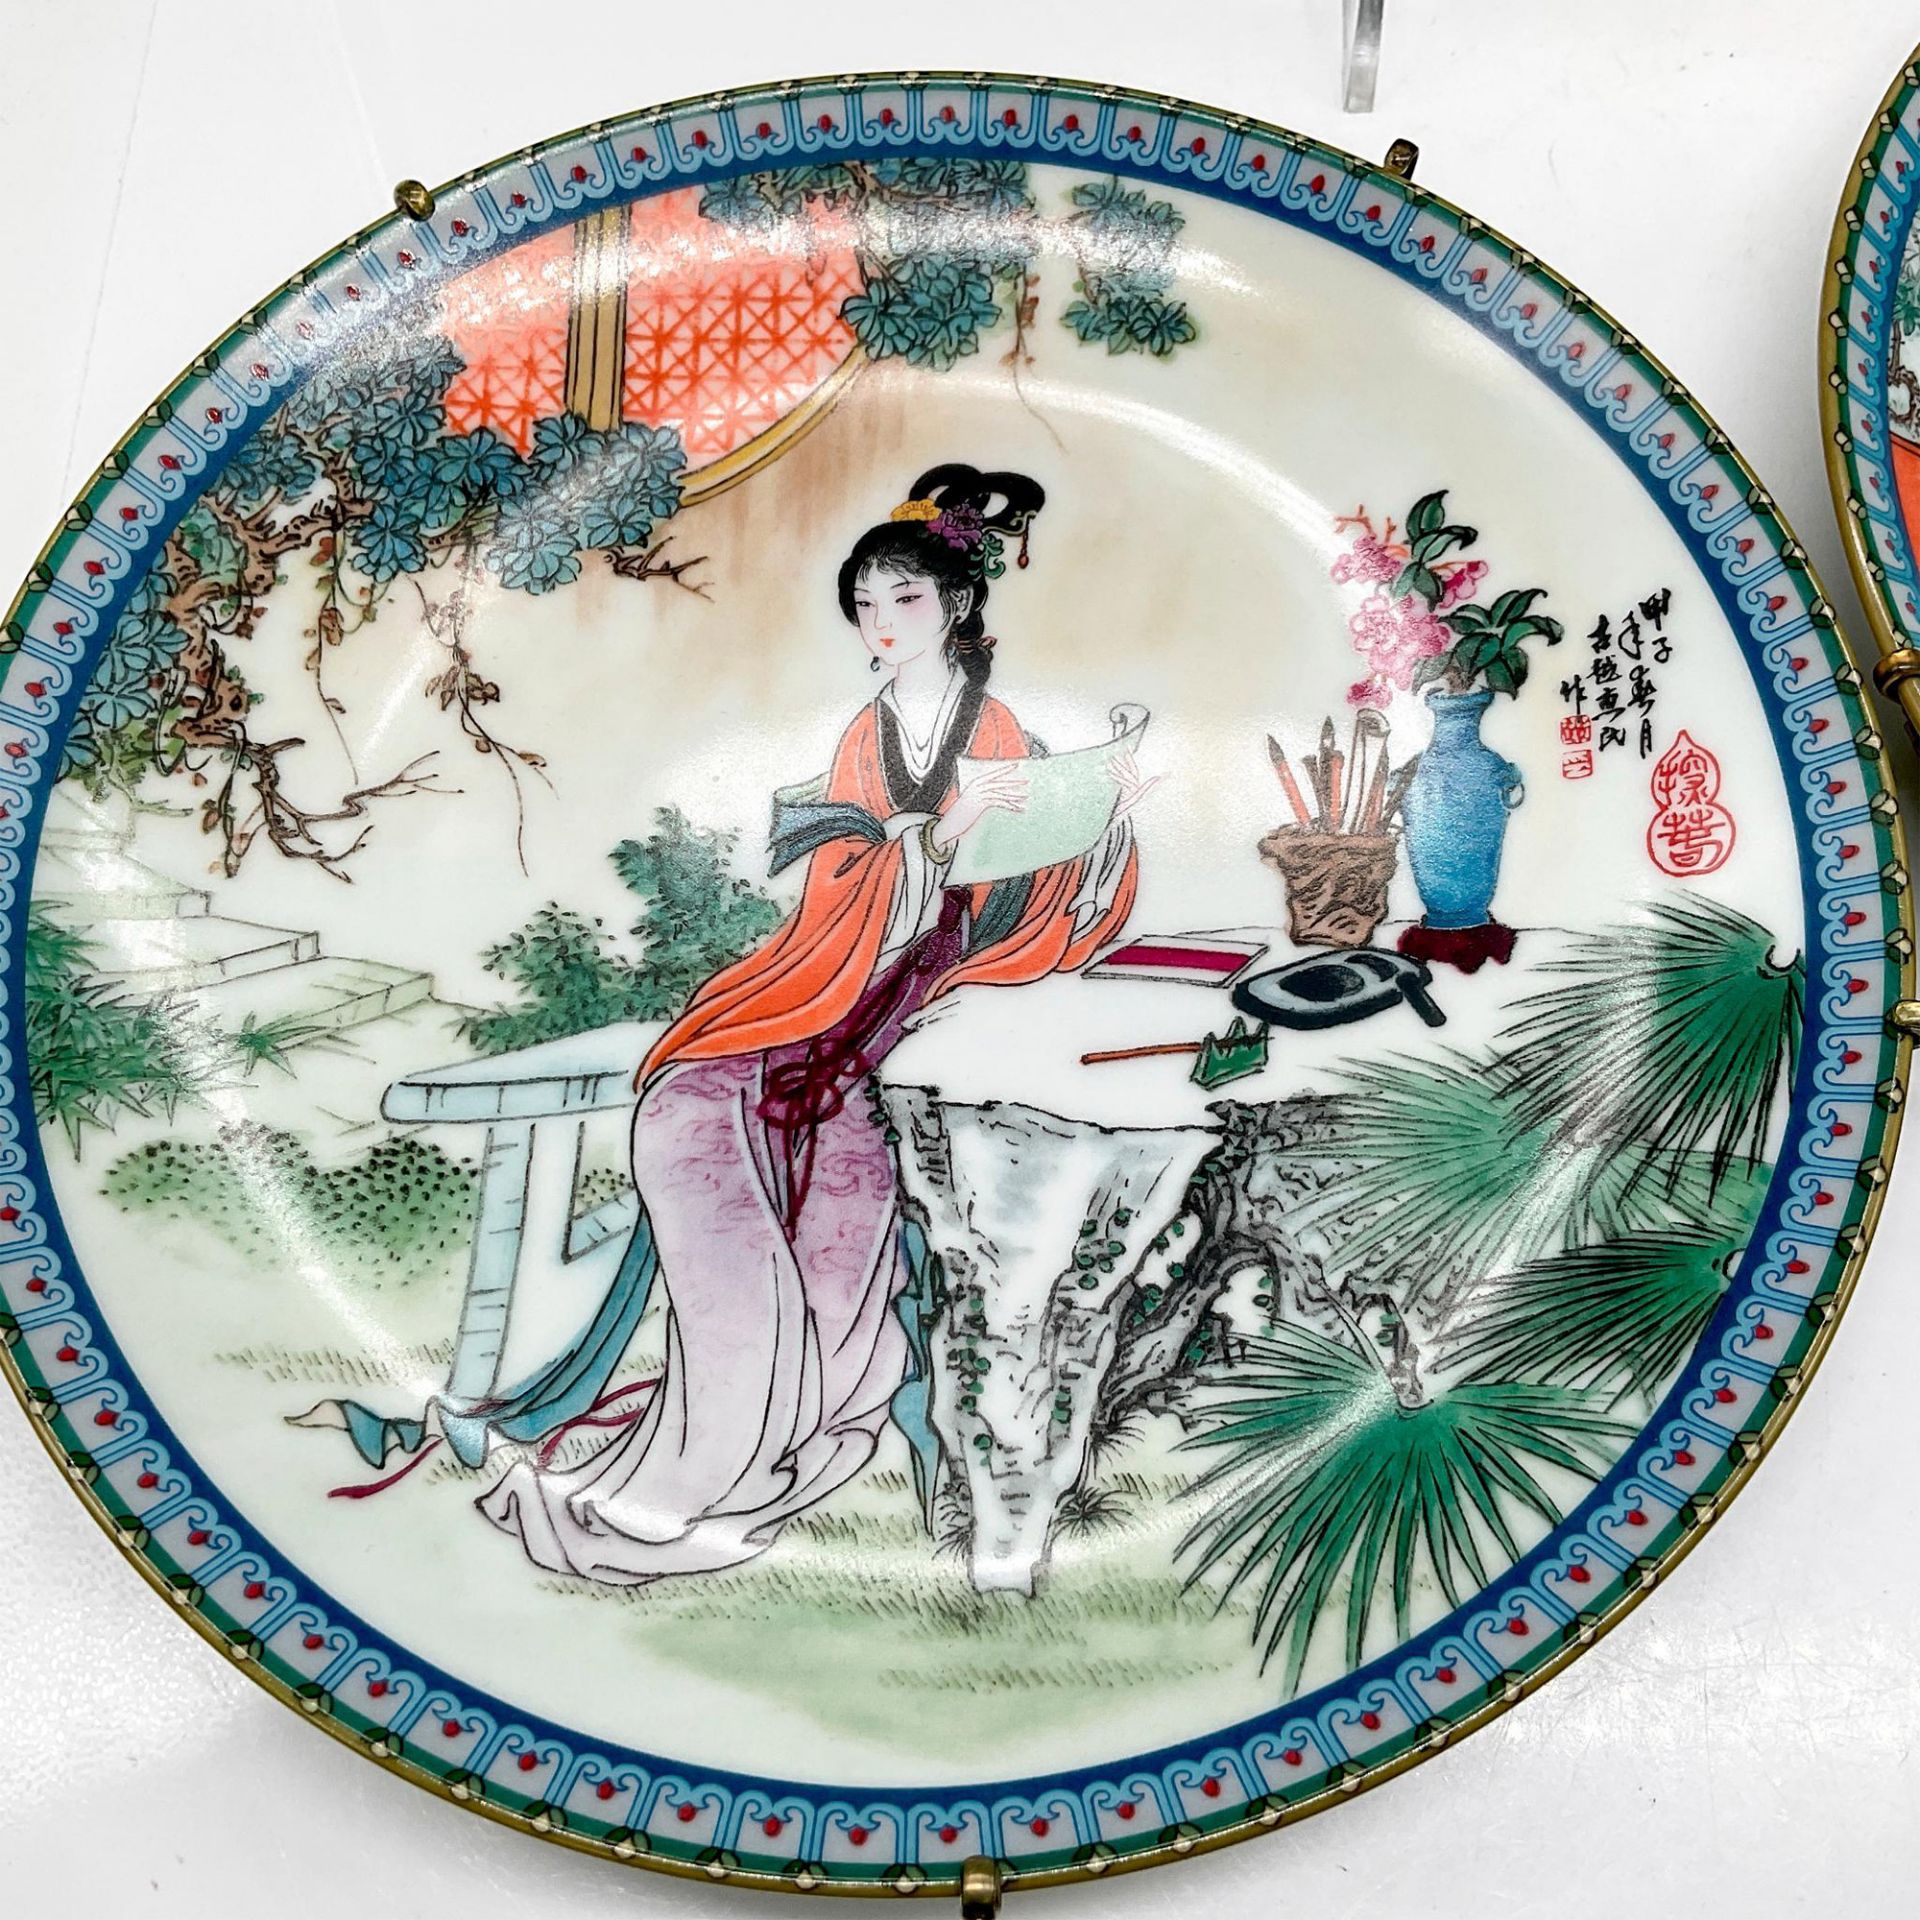 3pc Imperial Jingdezhen Porcelain Plates - Image 2 of 5